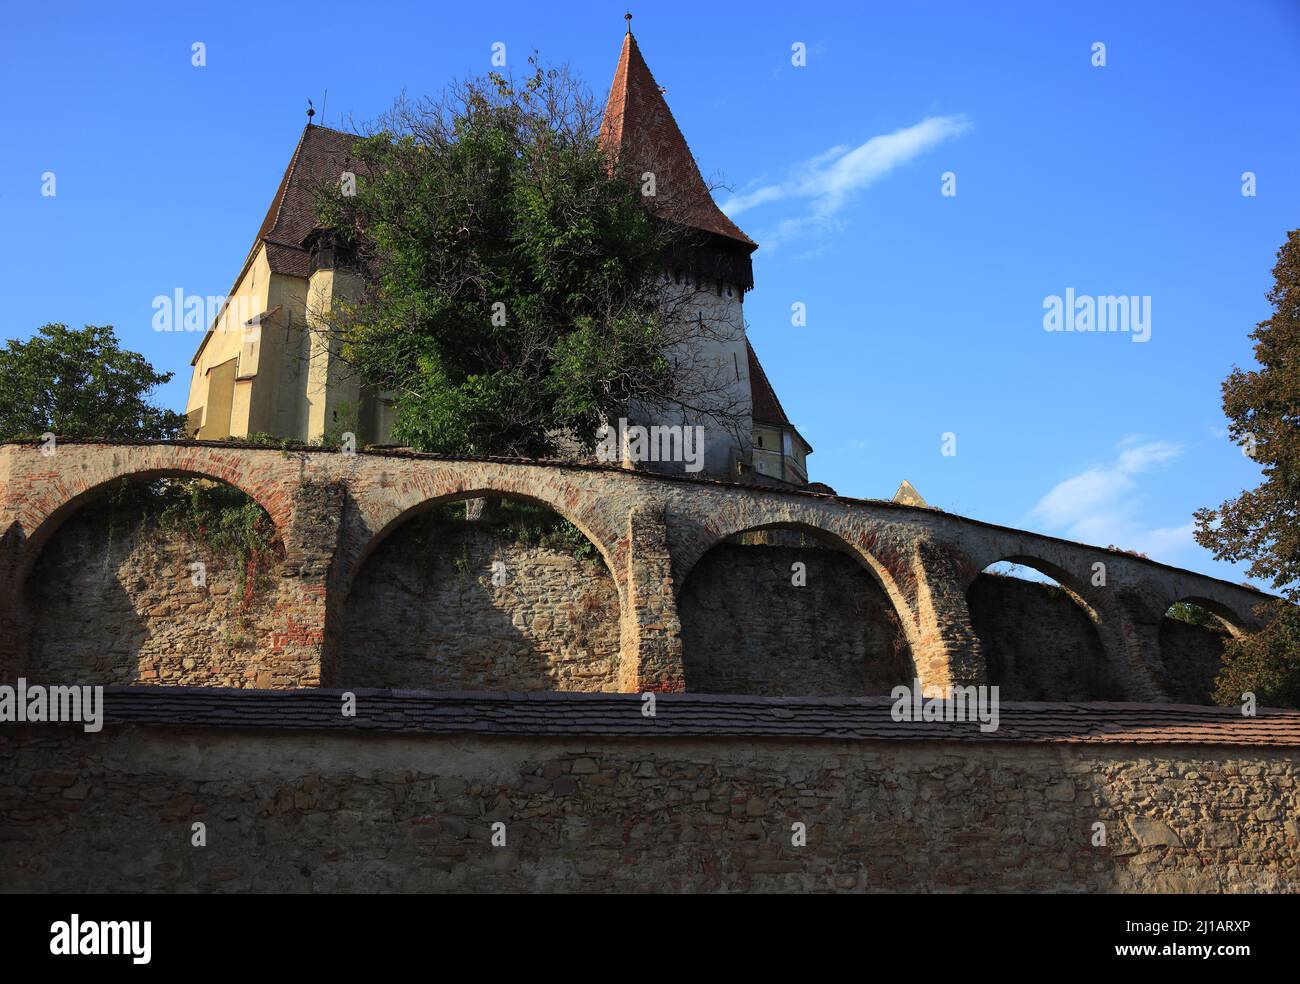 Kirchenburg, UNESCO-Weltkulturerbe, Biertan, Birthälm, eine Gemeinde im Kreis Sibiu, in Siebenbürgen, Rumänien  /  Fortified church, UNESCO World Heri Stock Photo